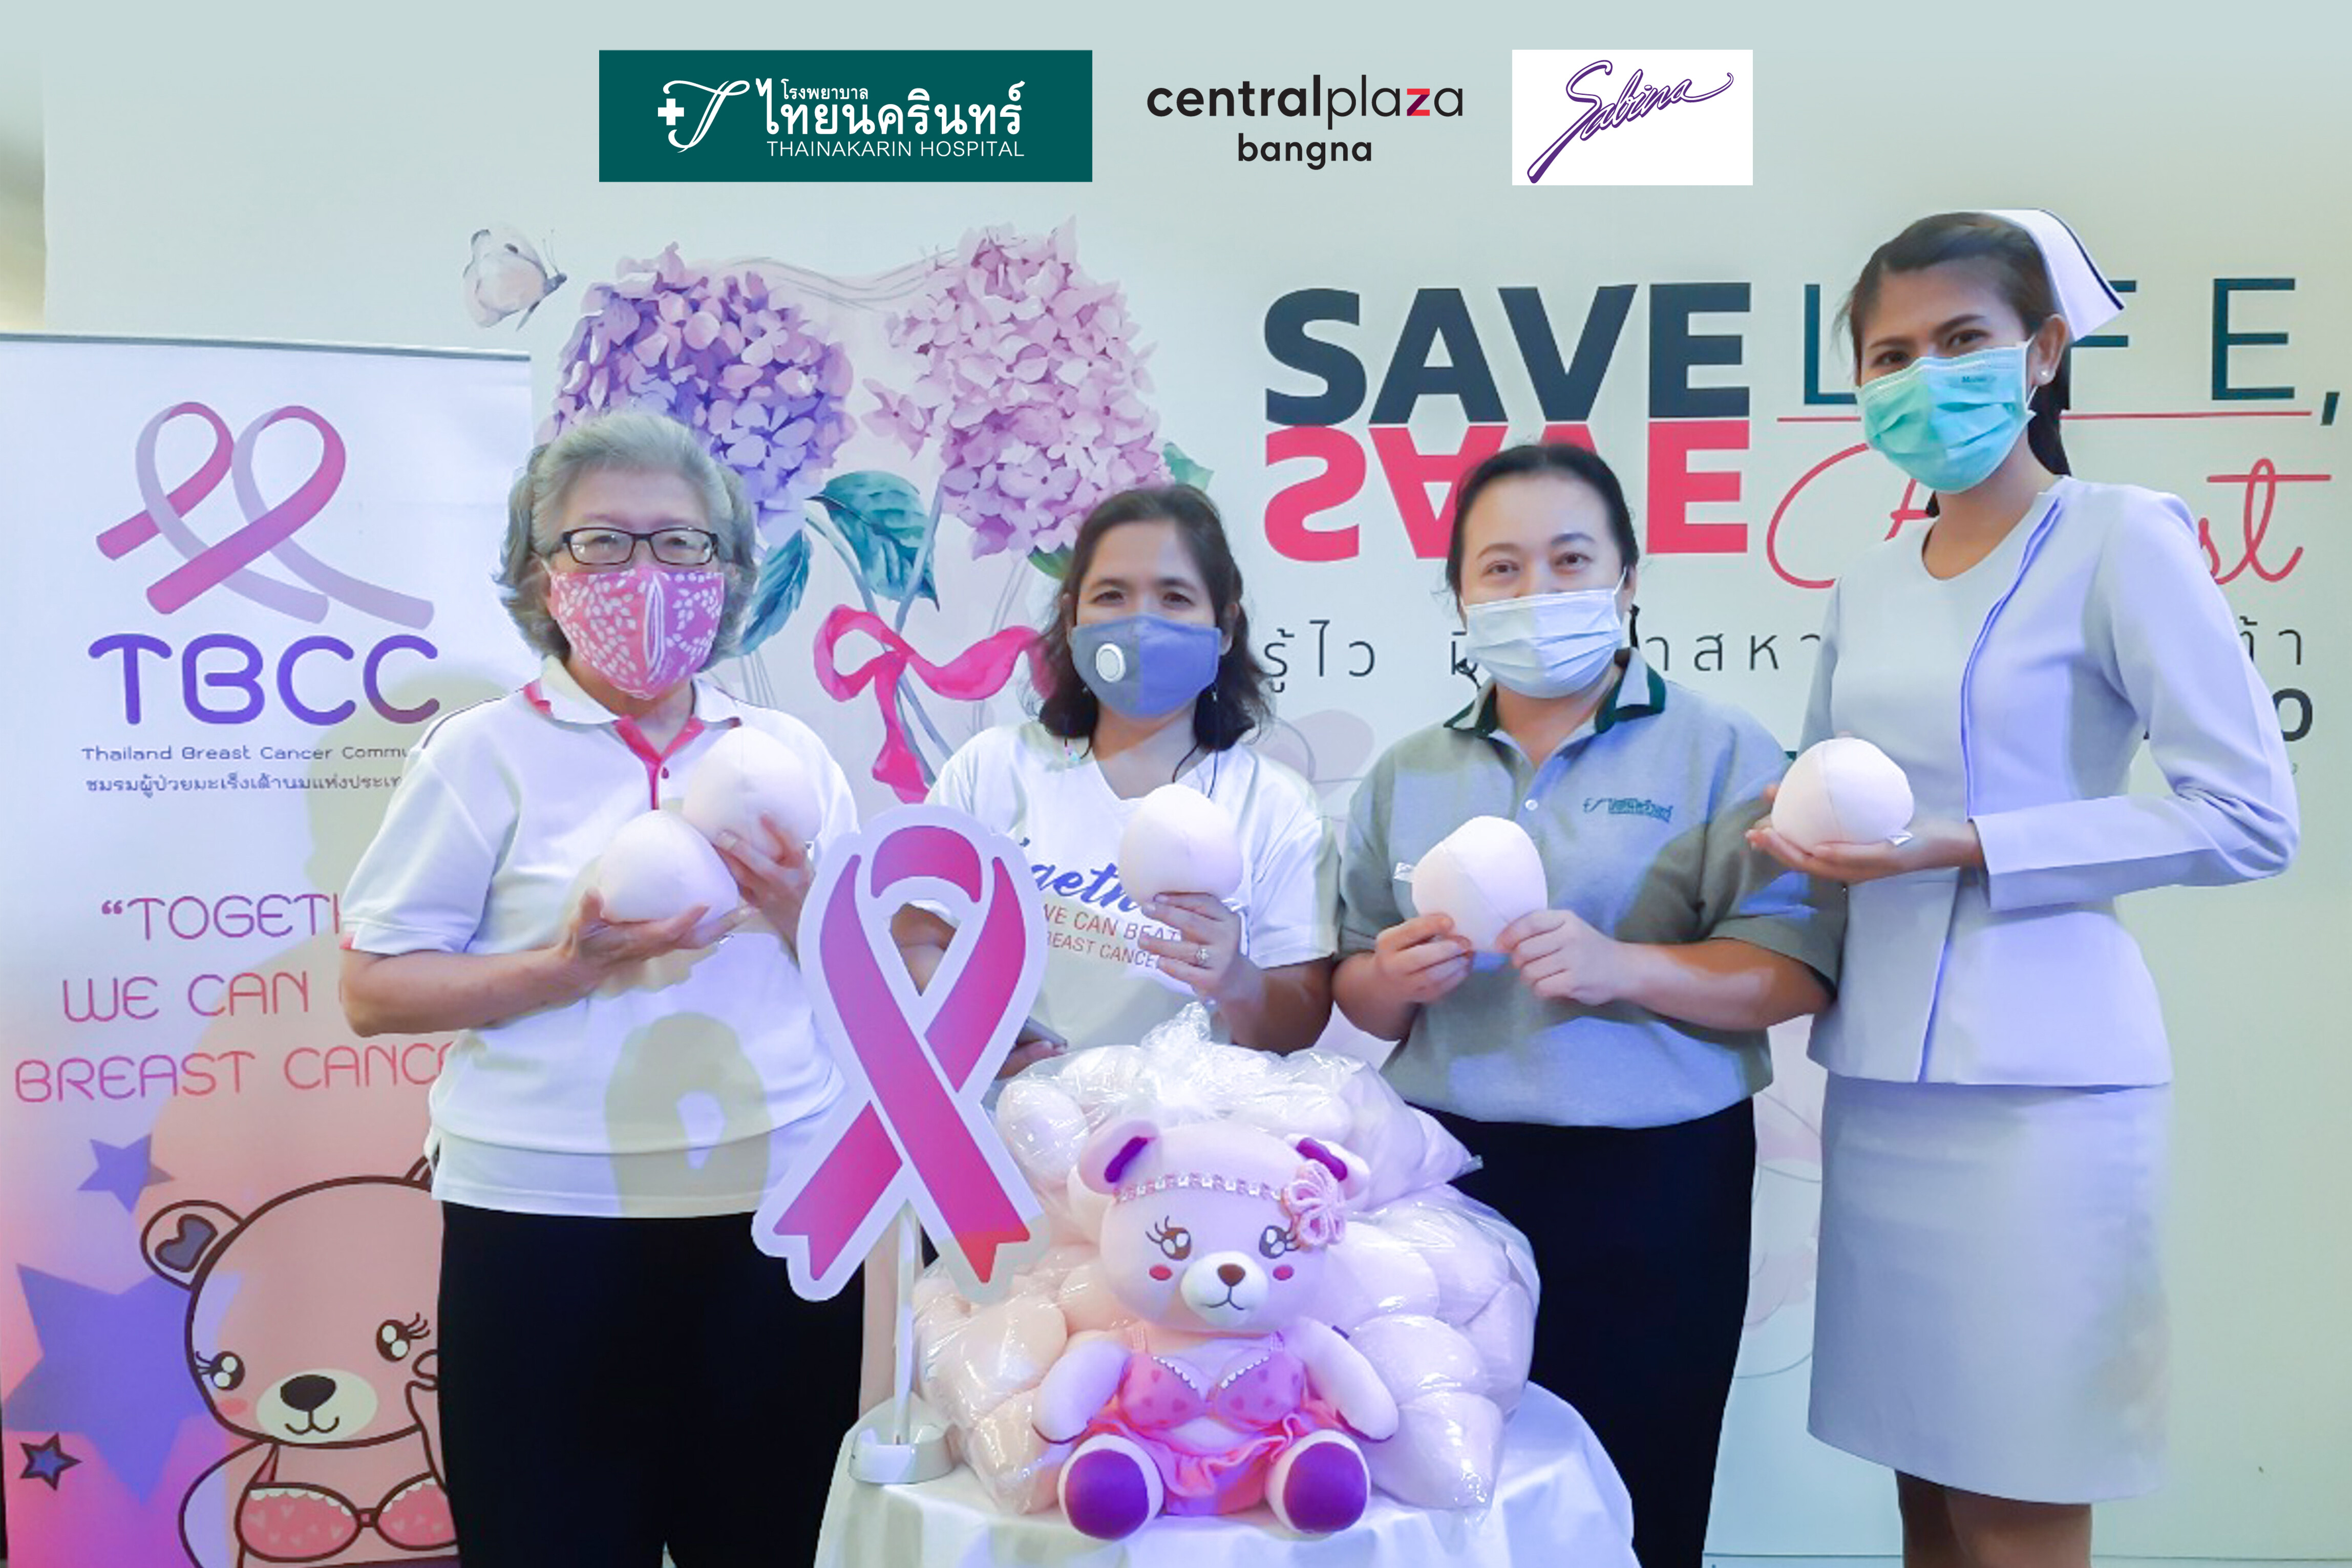 โรงพยาบาลไทยนครินทร์ ส่งมอบเต้านมเทียมให้กับชมรมผู้ป่วยมะเร็งเต้านมแห่งประเทศไทย